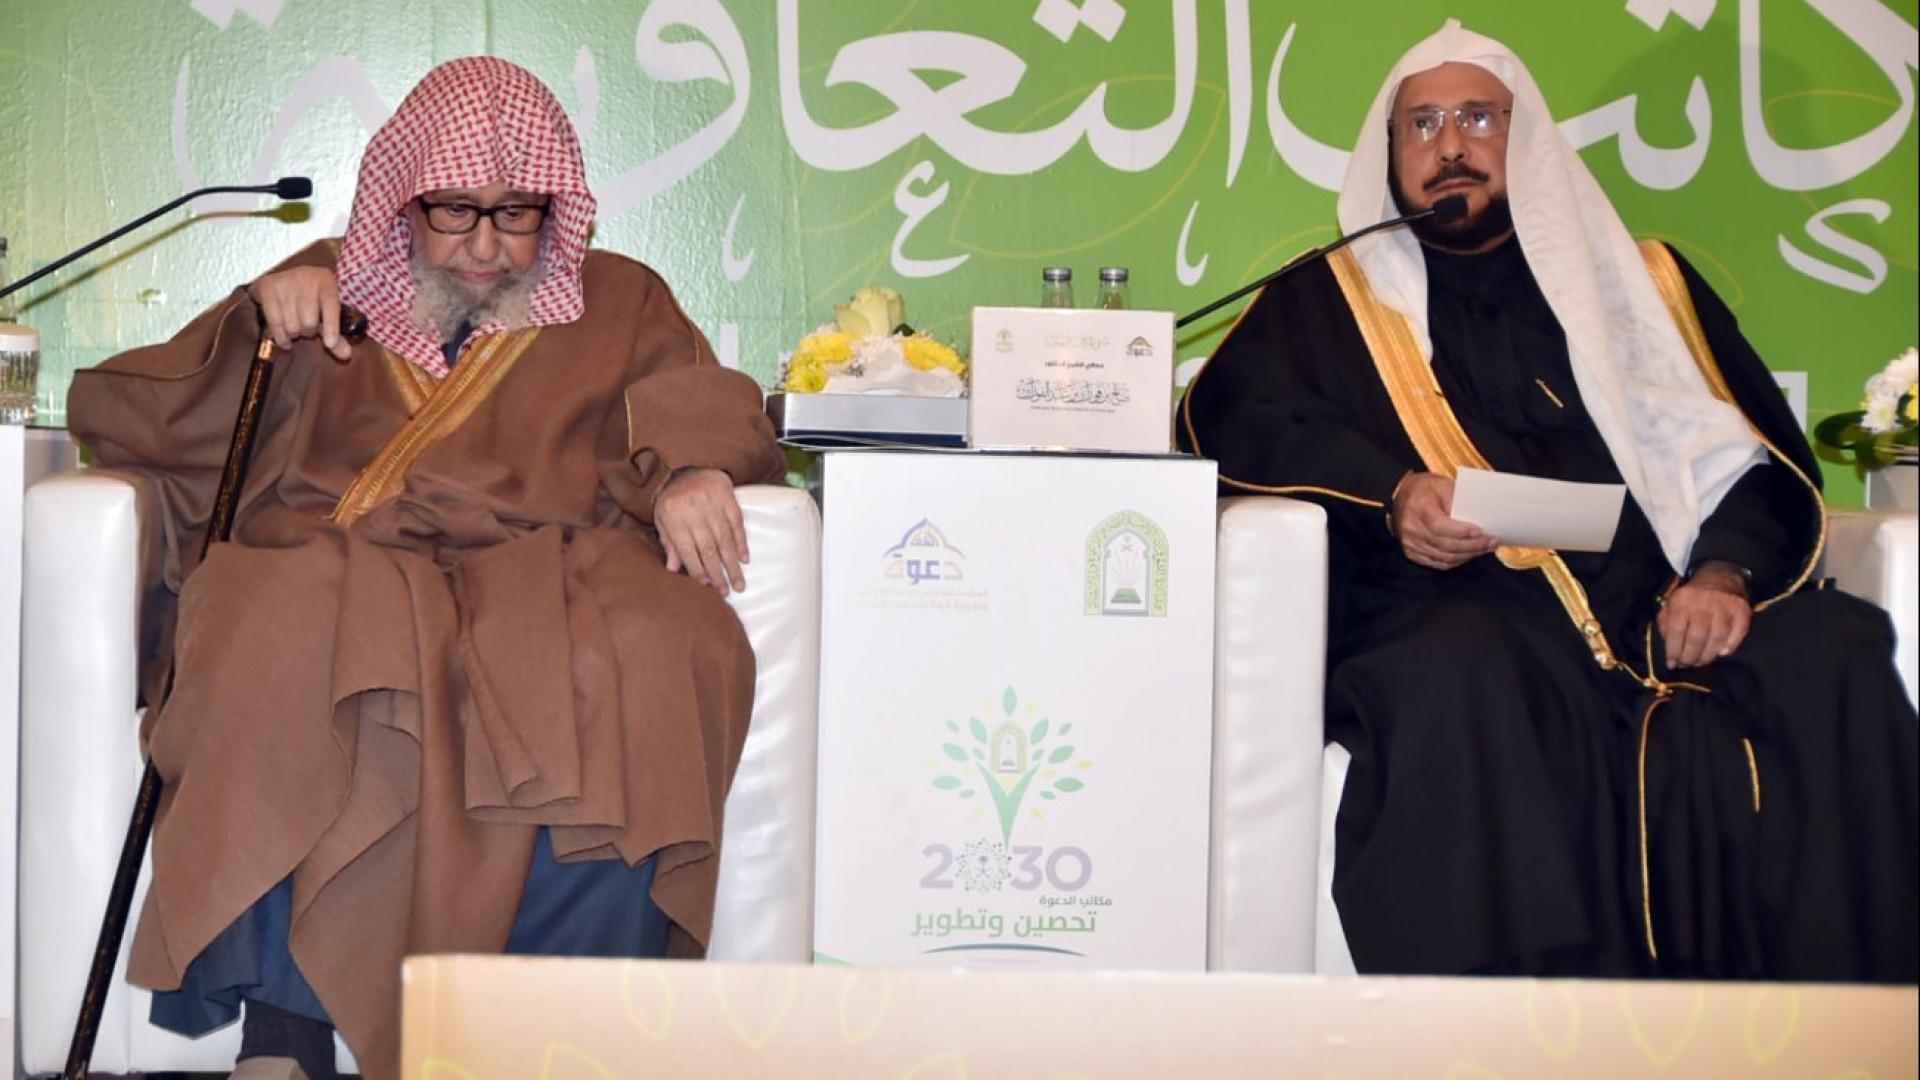 وزير الشؤون الإسلامية السعودي يحذر من “الثورات السامة المهلكة”